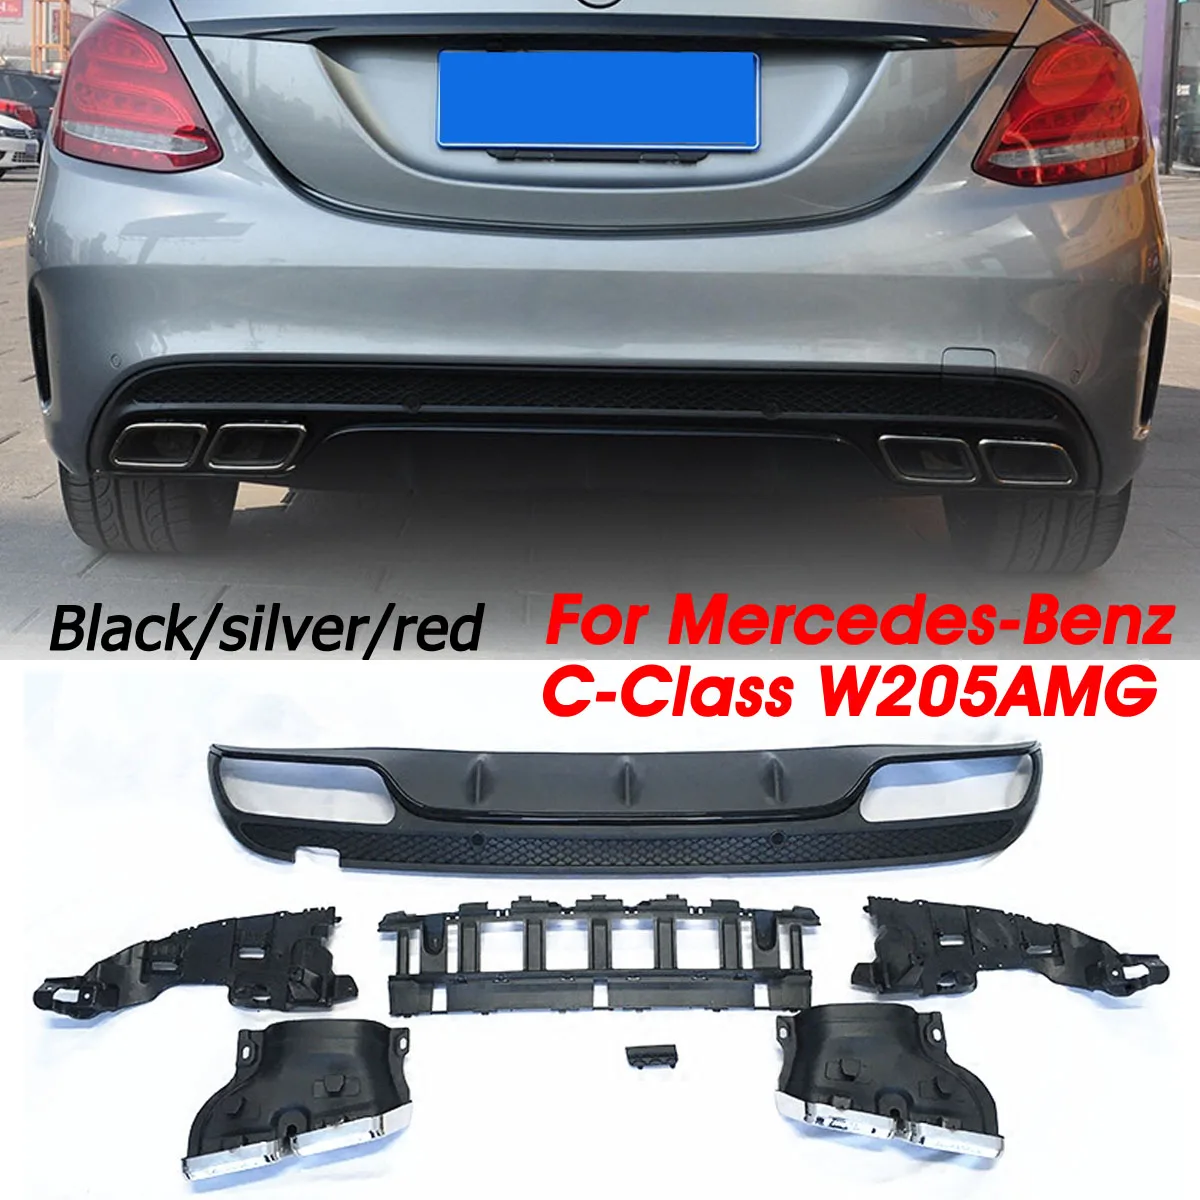 Autoleader 1 комплект черный/красный/серебристый ABS задний бампер диффузор наконечники глушителя спойлер СЕДАН бампер Защита для Benz c-класс W205